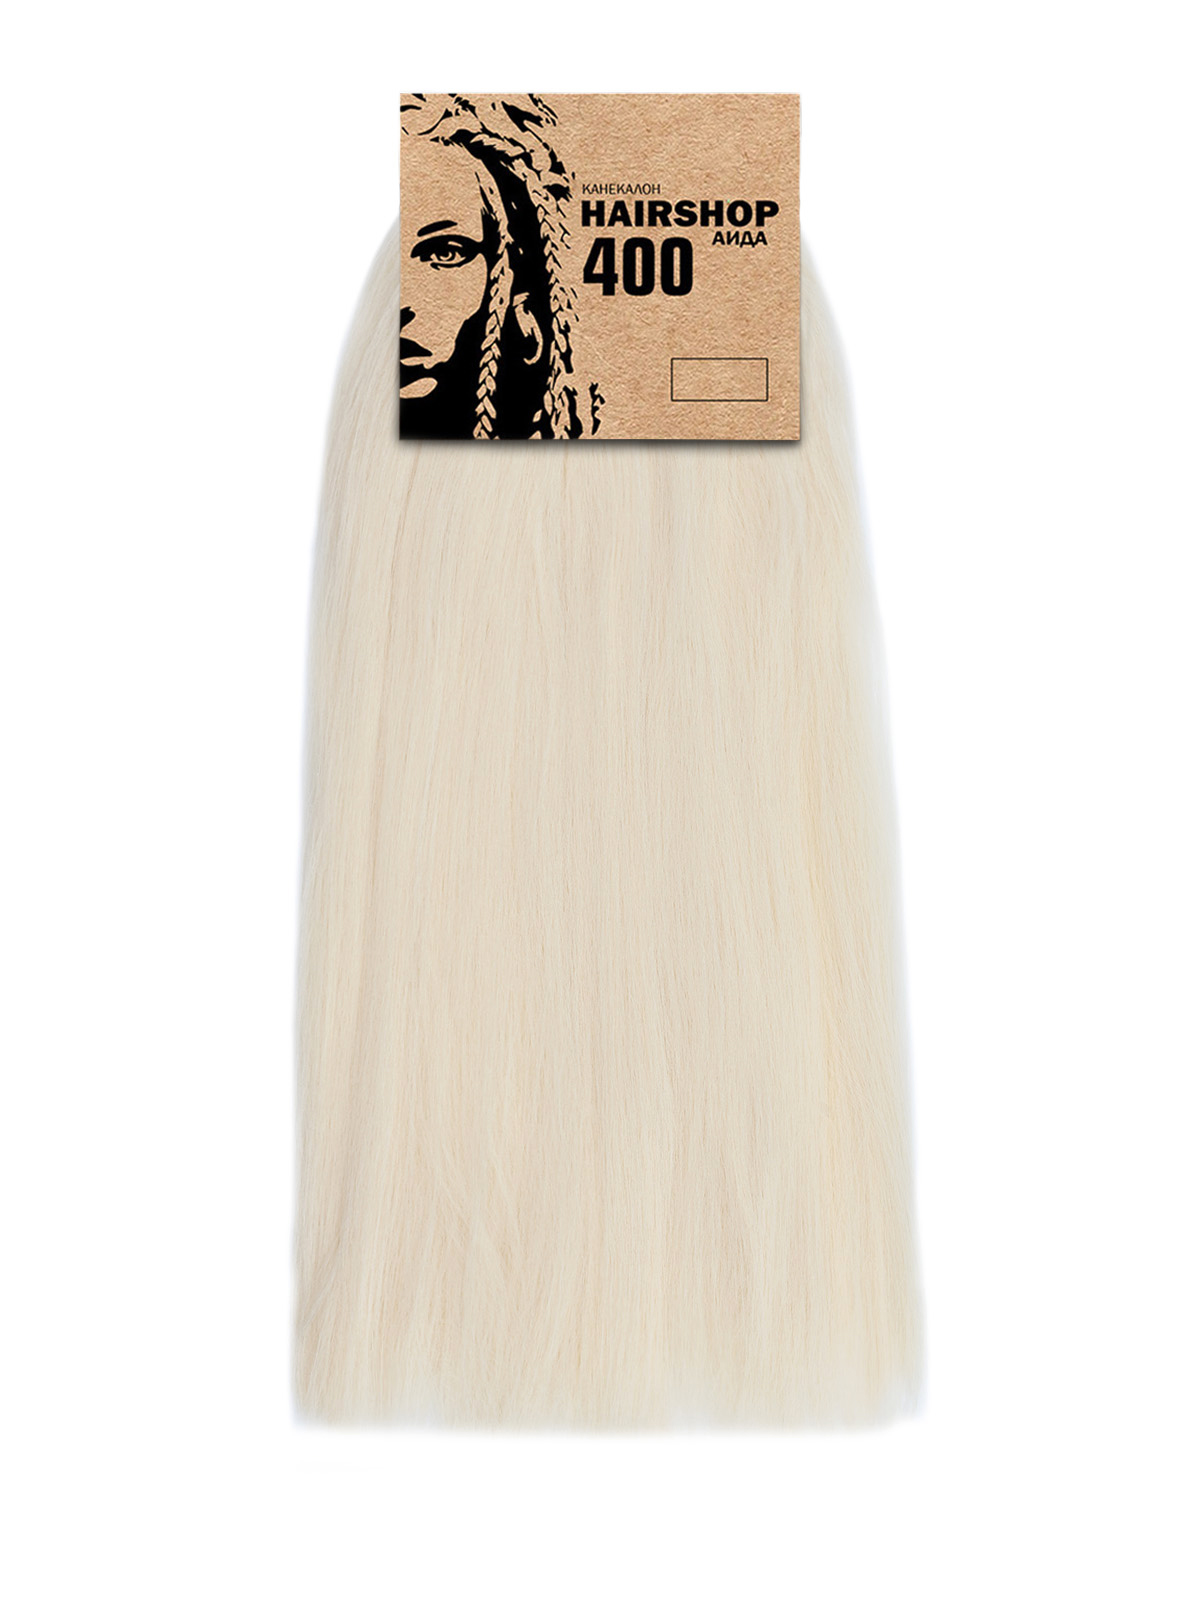 Канекалон Hairshop Аида 400г цвет 303 Светлый блонд канекалон hairshop аида 400г 302 высветленный блонд